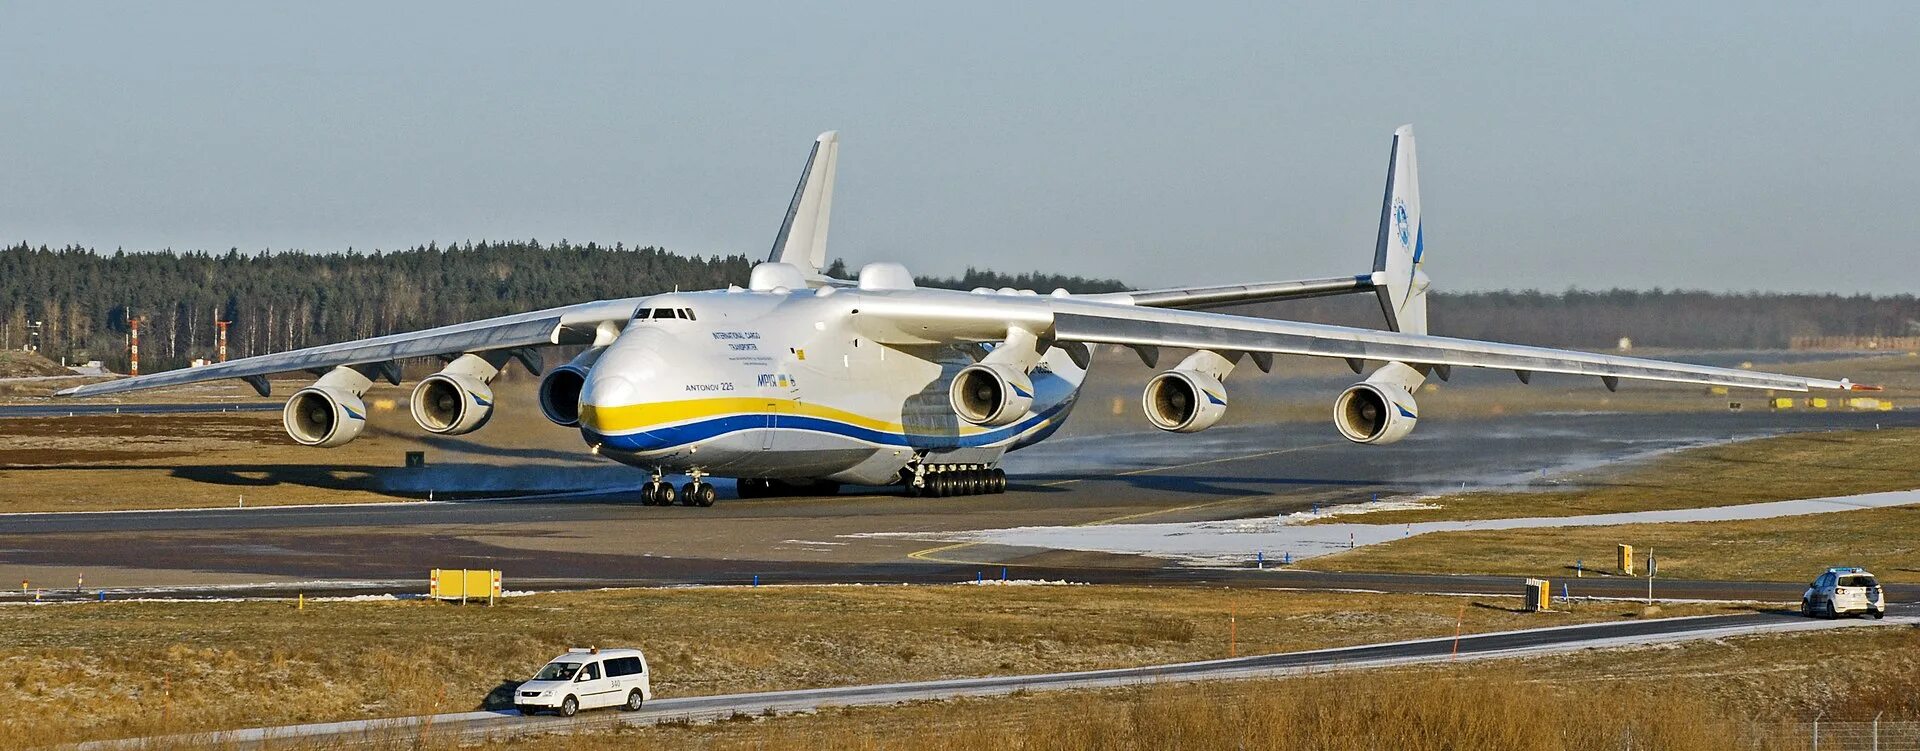 Самолет находящийся в полете преодолевает 225 метров. Самолет Мрия АН-225. Антонов 225 Мрия. АН-225 Мрия кабина. АН-124 Мрия.